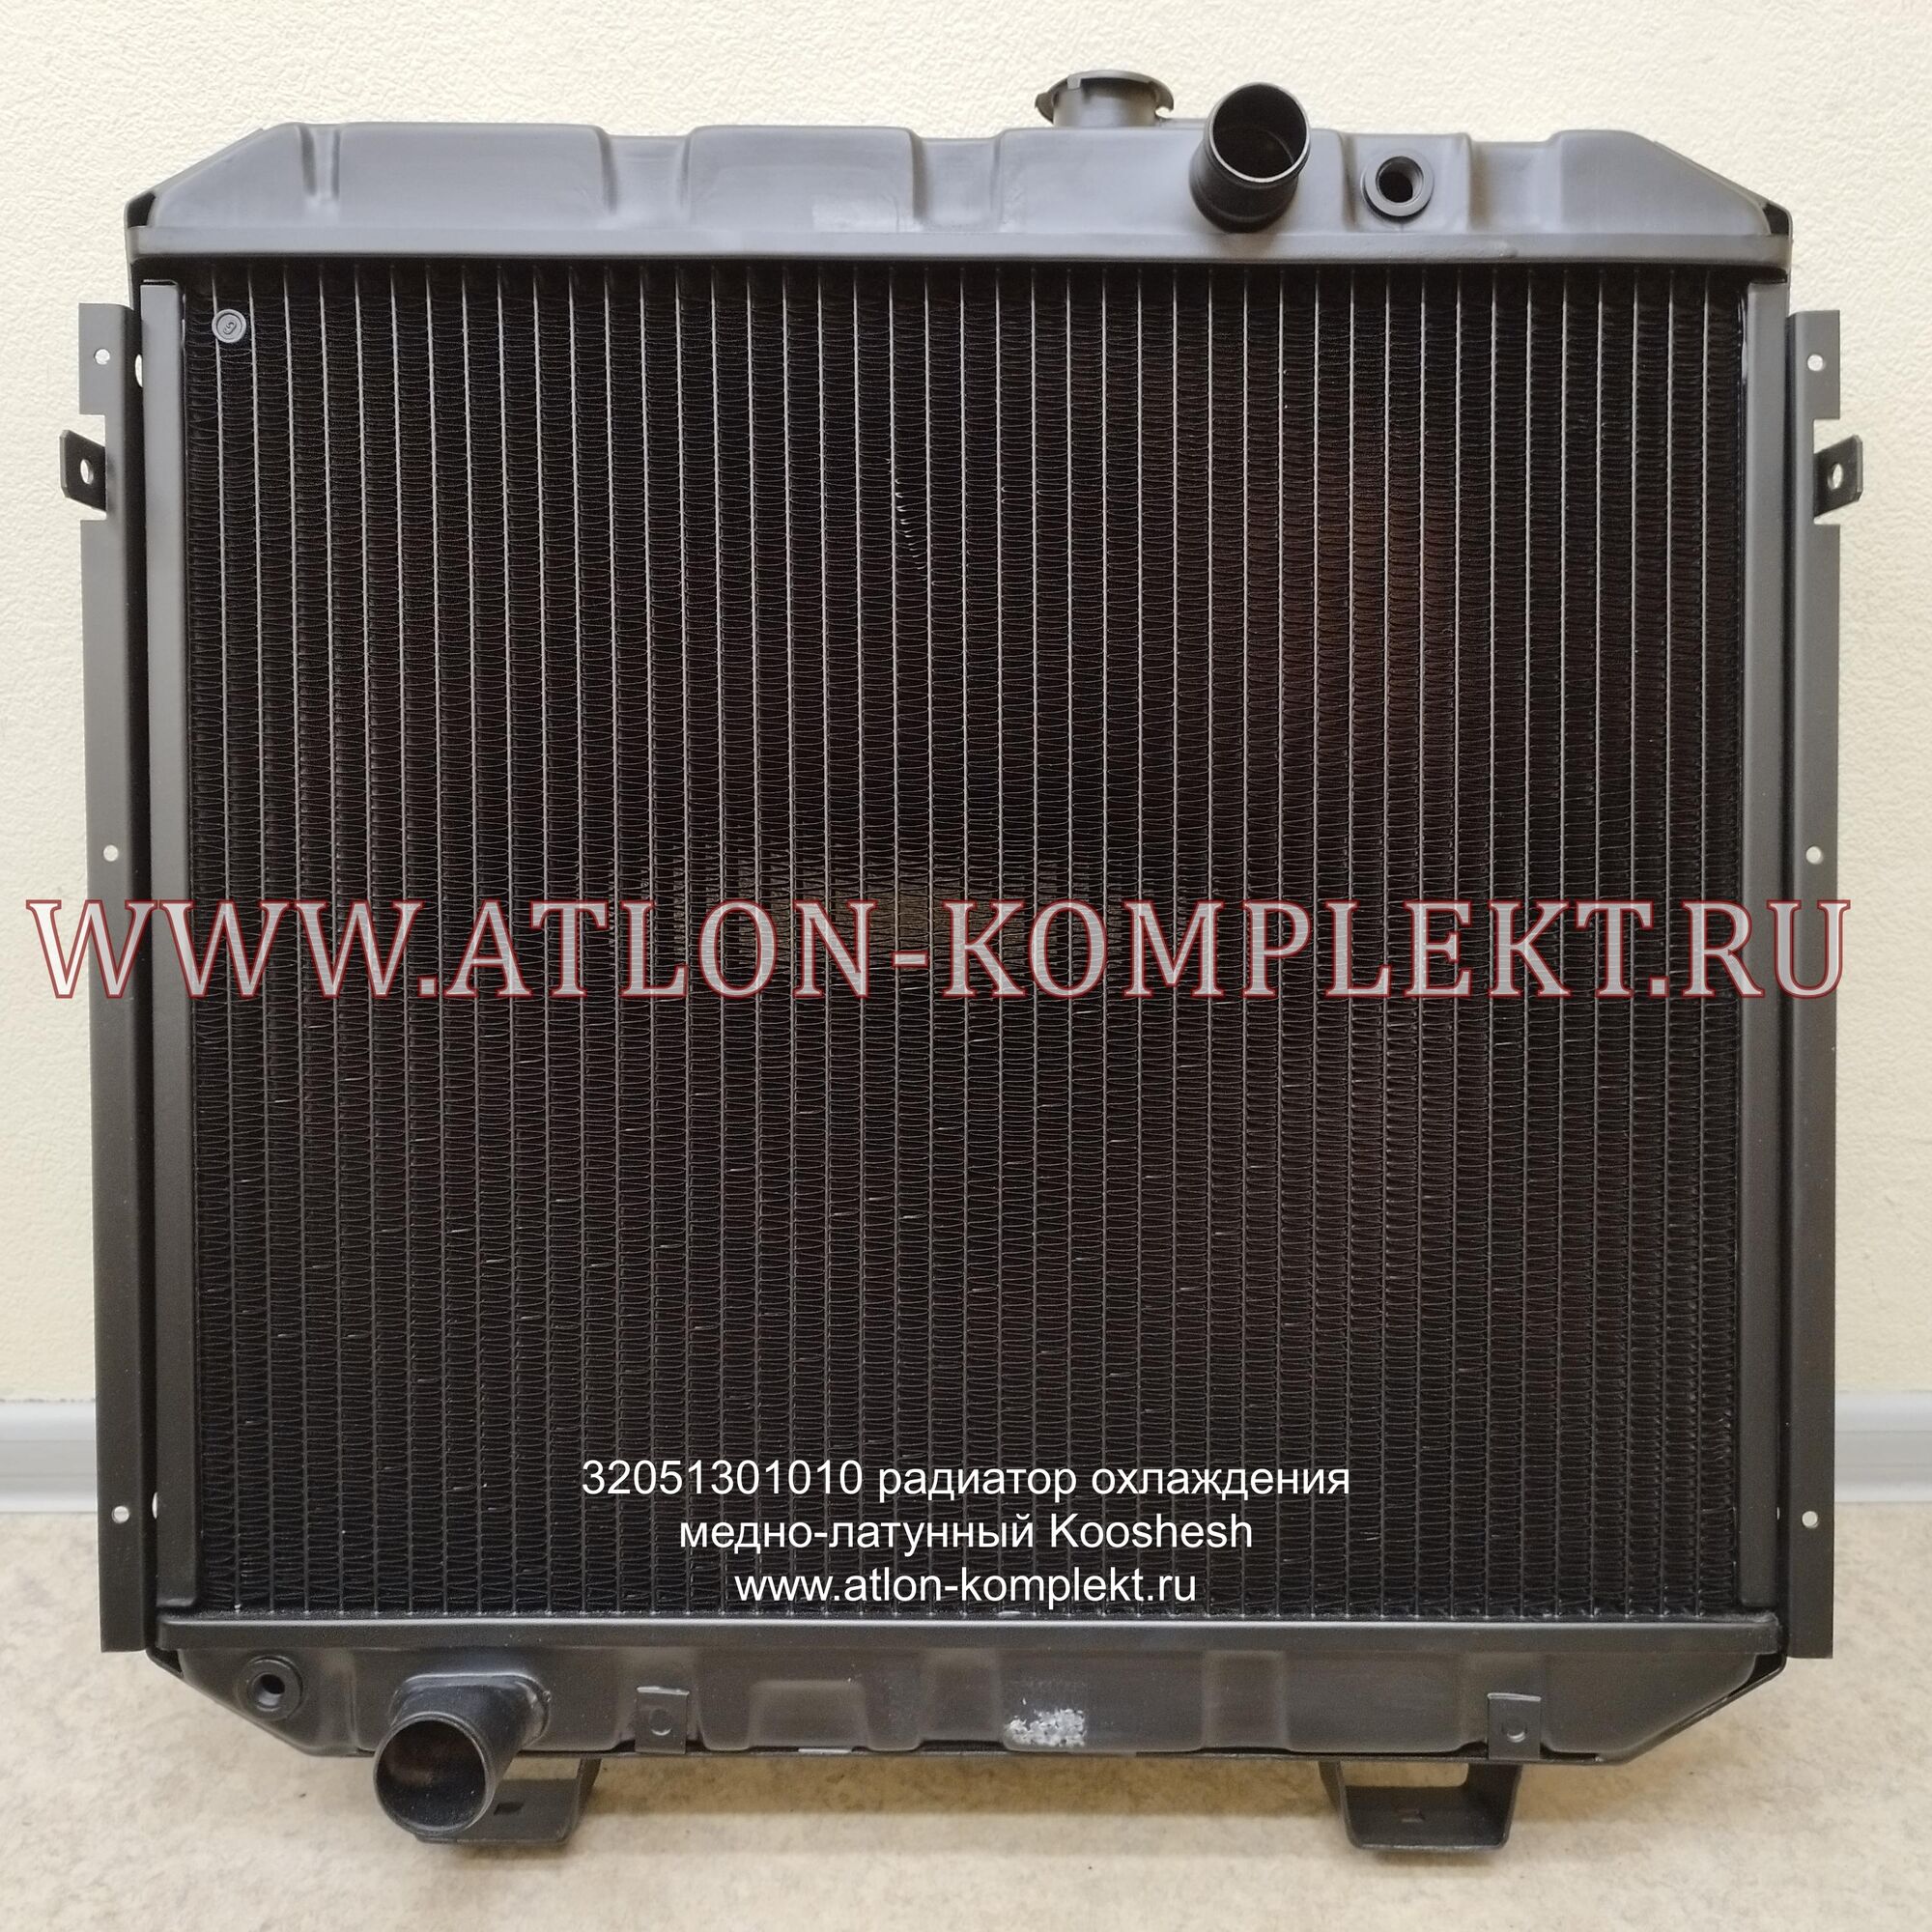 Радиатор ПАЗ-3205 с ММЗ Д-245 медный 4-х рядный 32051301010 Kooshesh